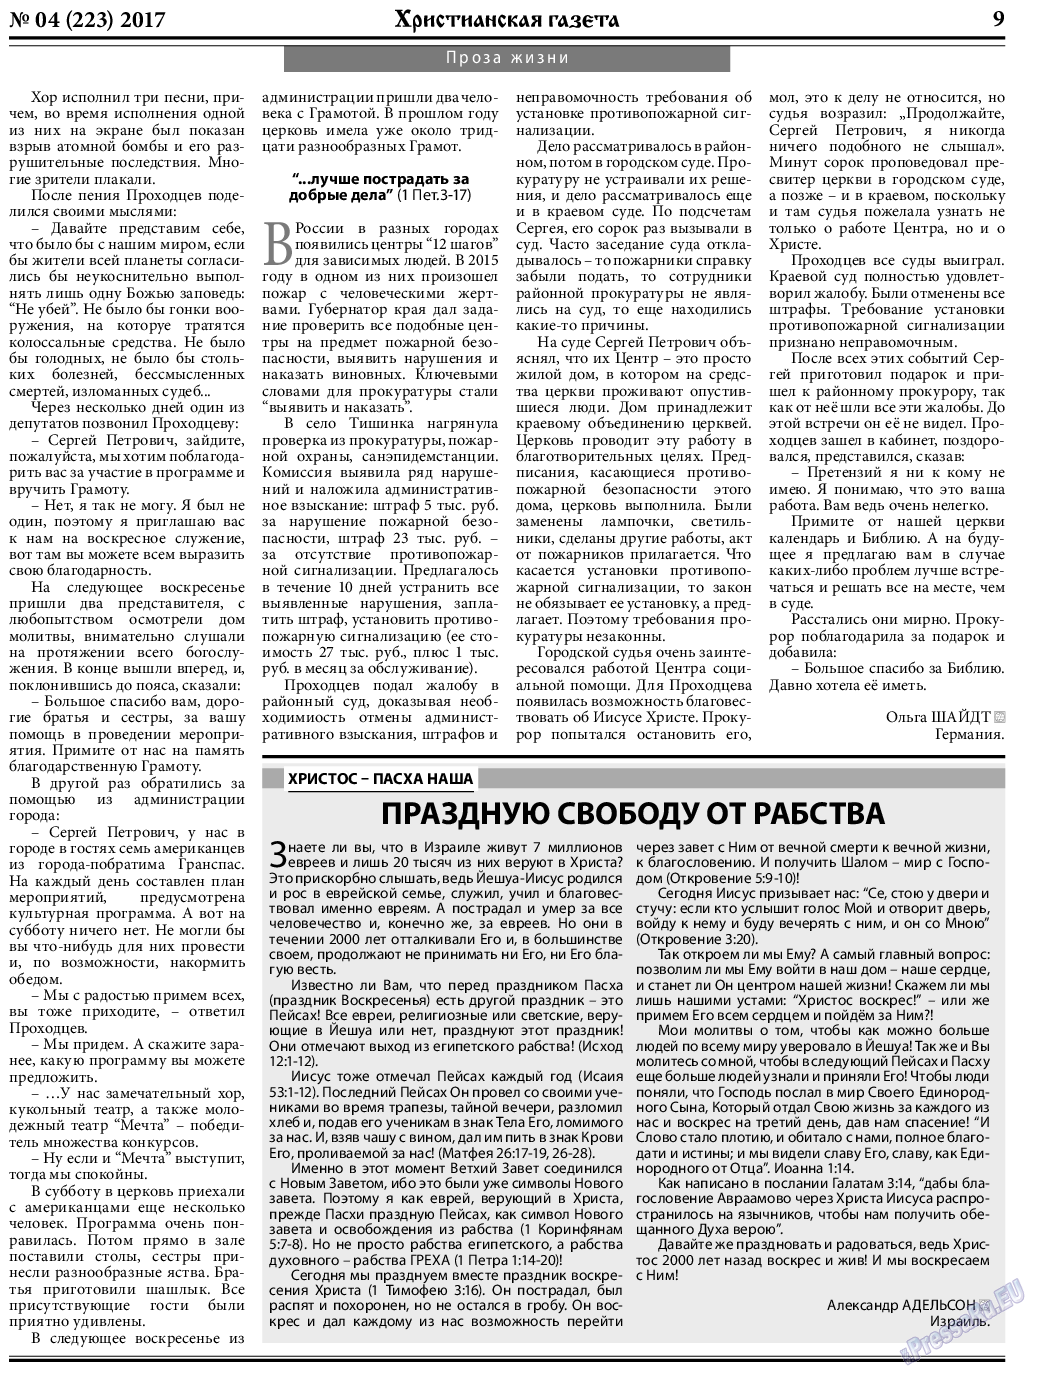 Христианская газета, газета. 2017 №4 стр.9